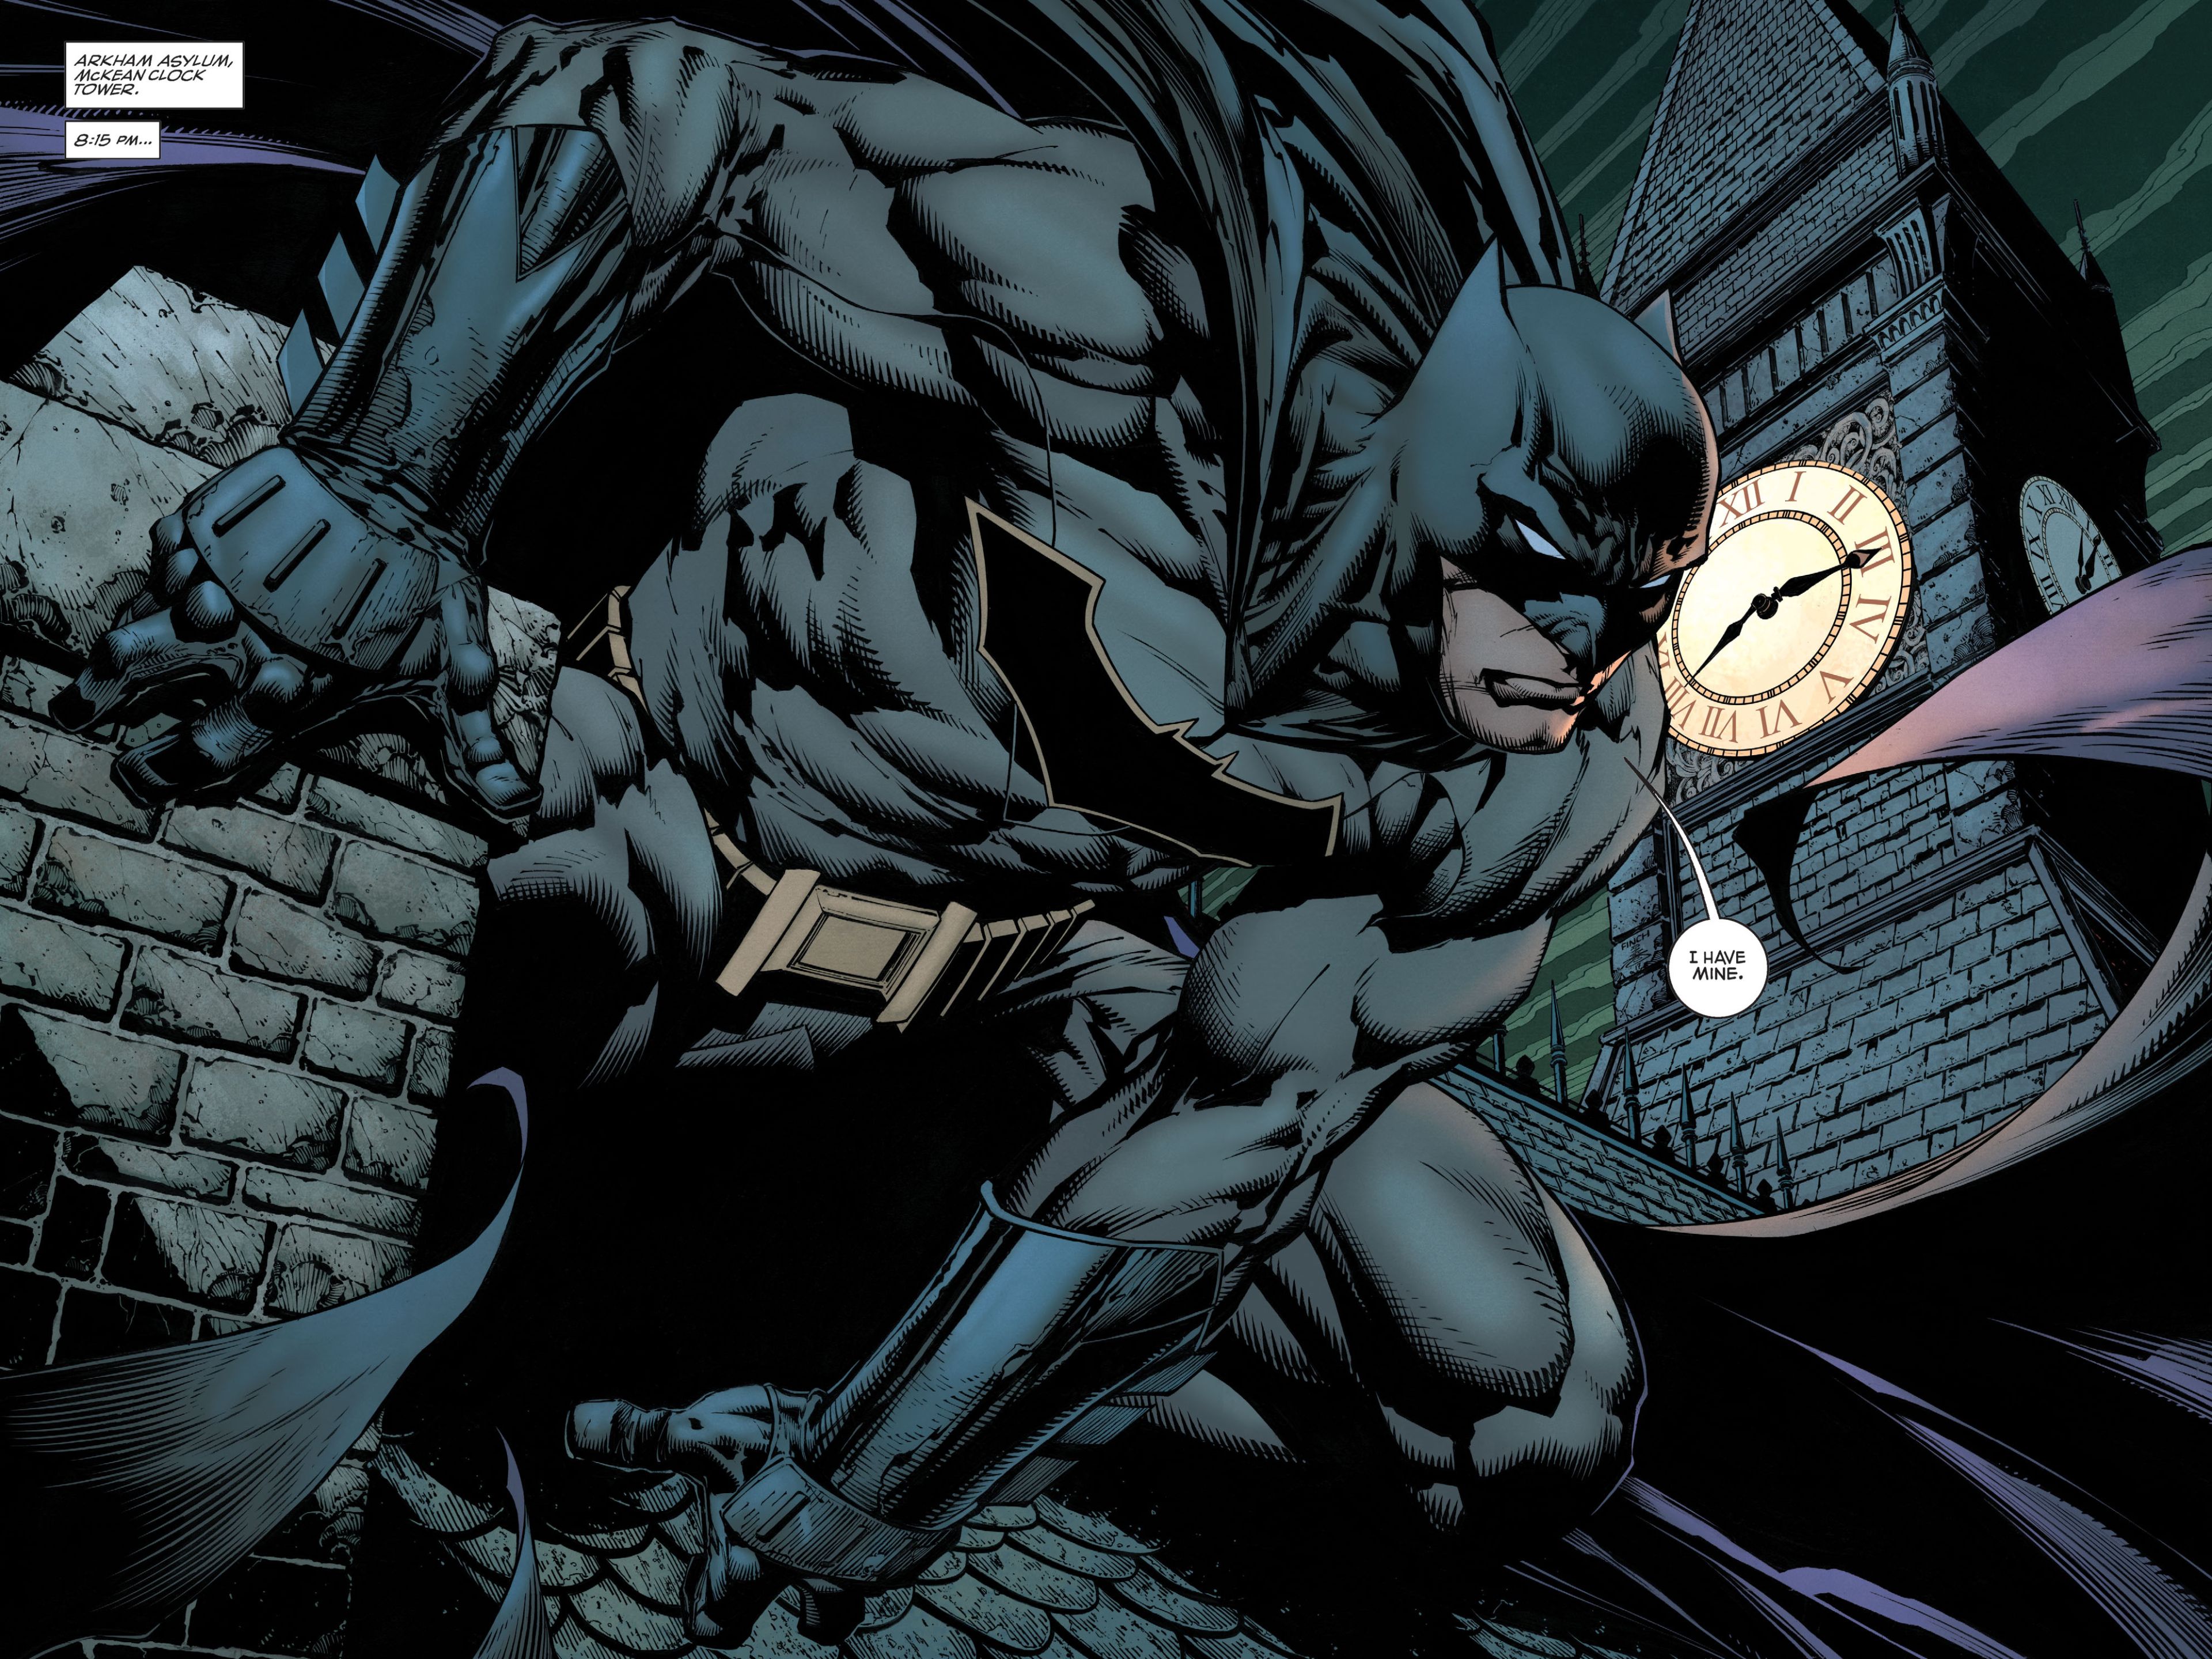 Batman (DC Comics) 4K UHD 4:3 3840x2880 Wallpaper. UHD WALLPAPERS.EU